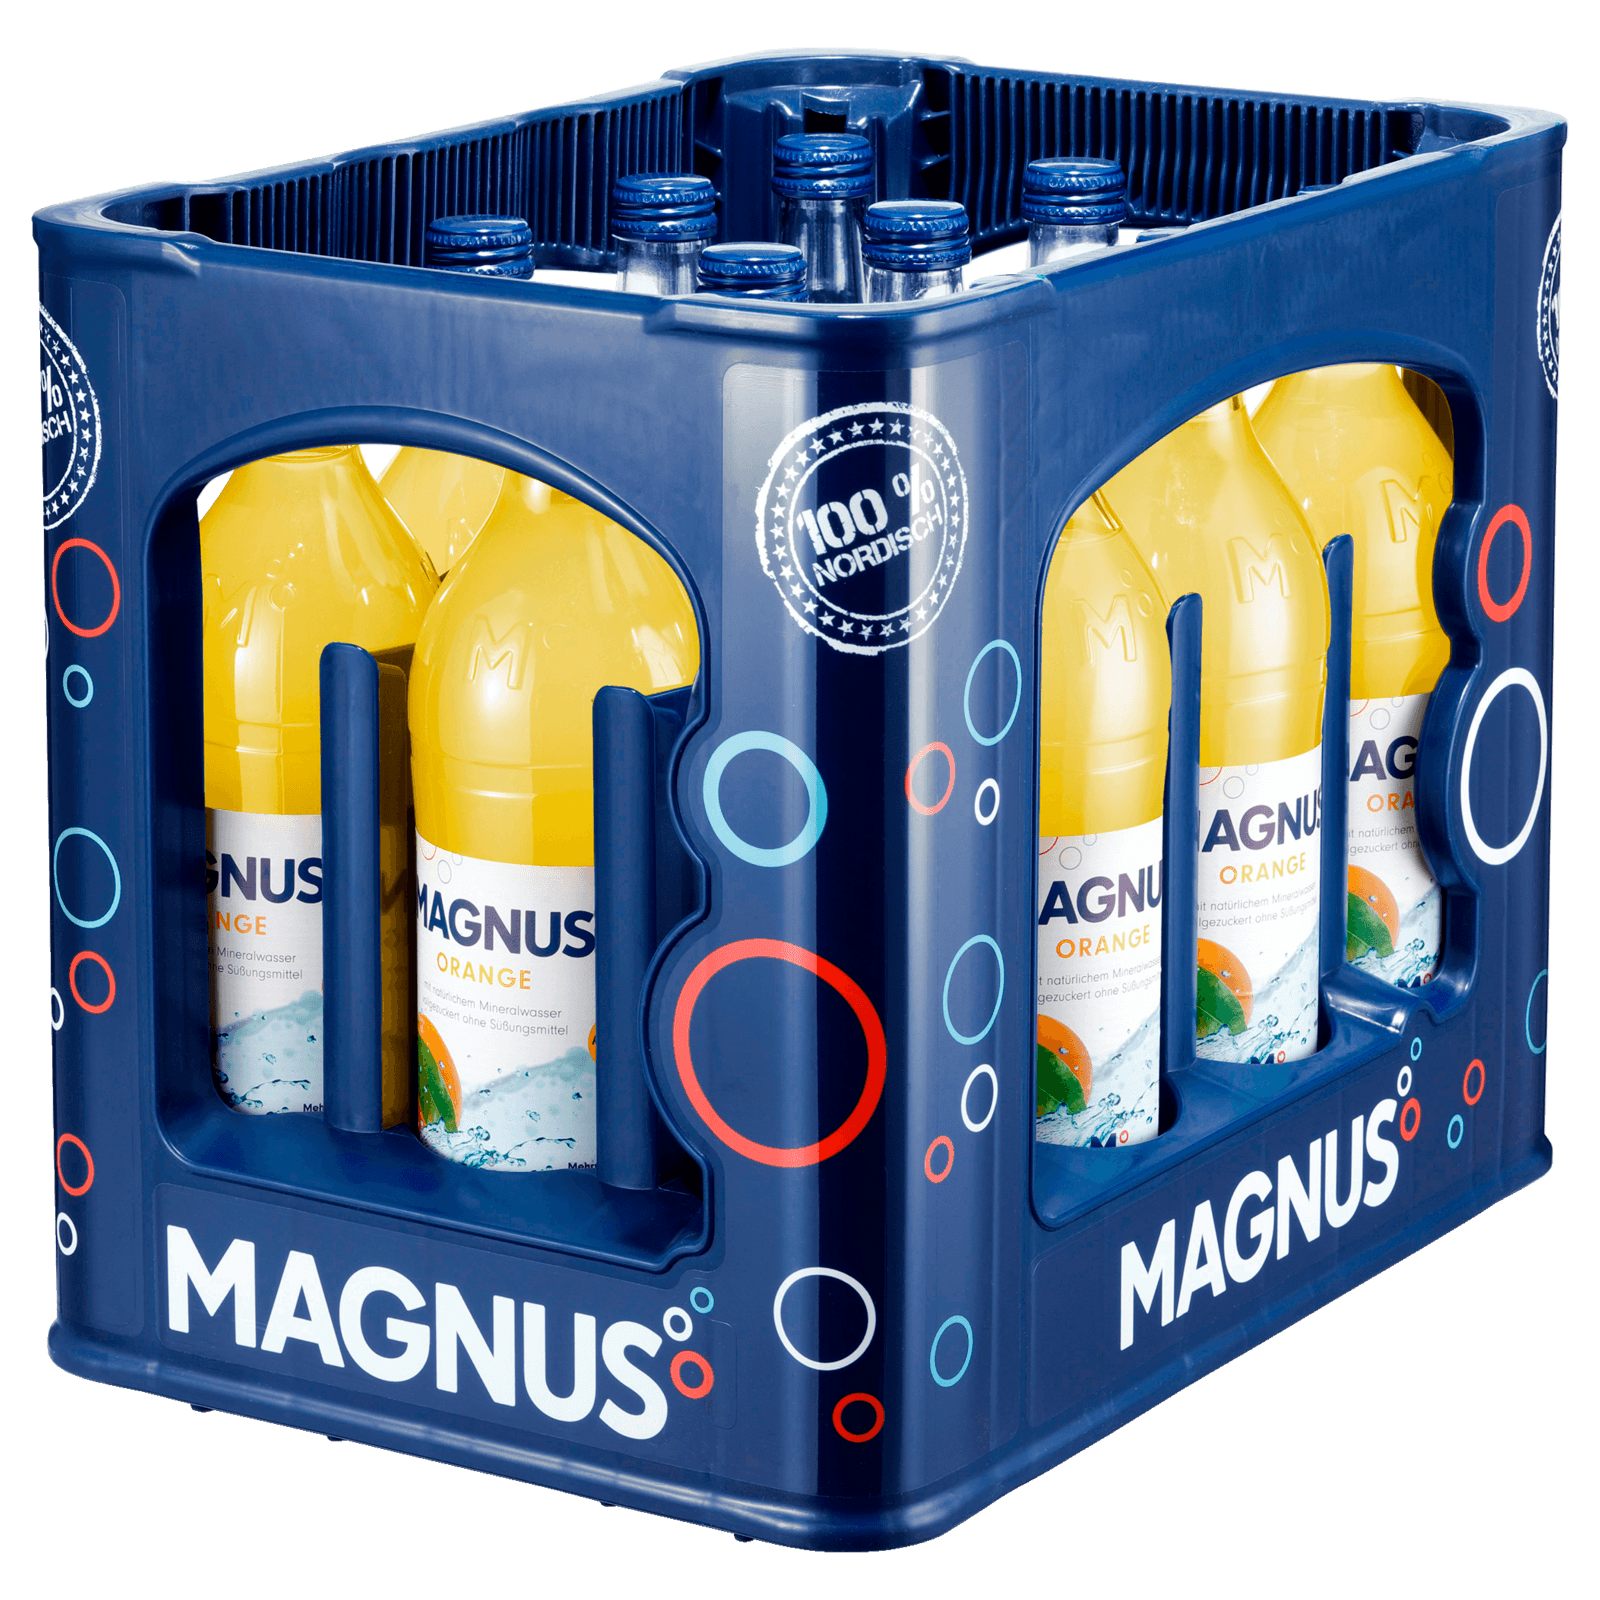 Magnus Orangenlimonade 12x0,7l  für 8.49 EUR